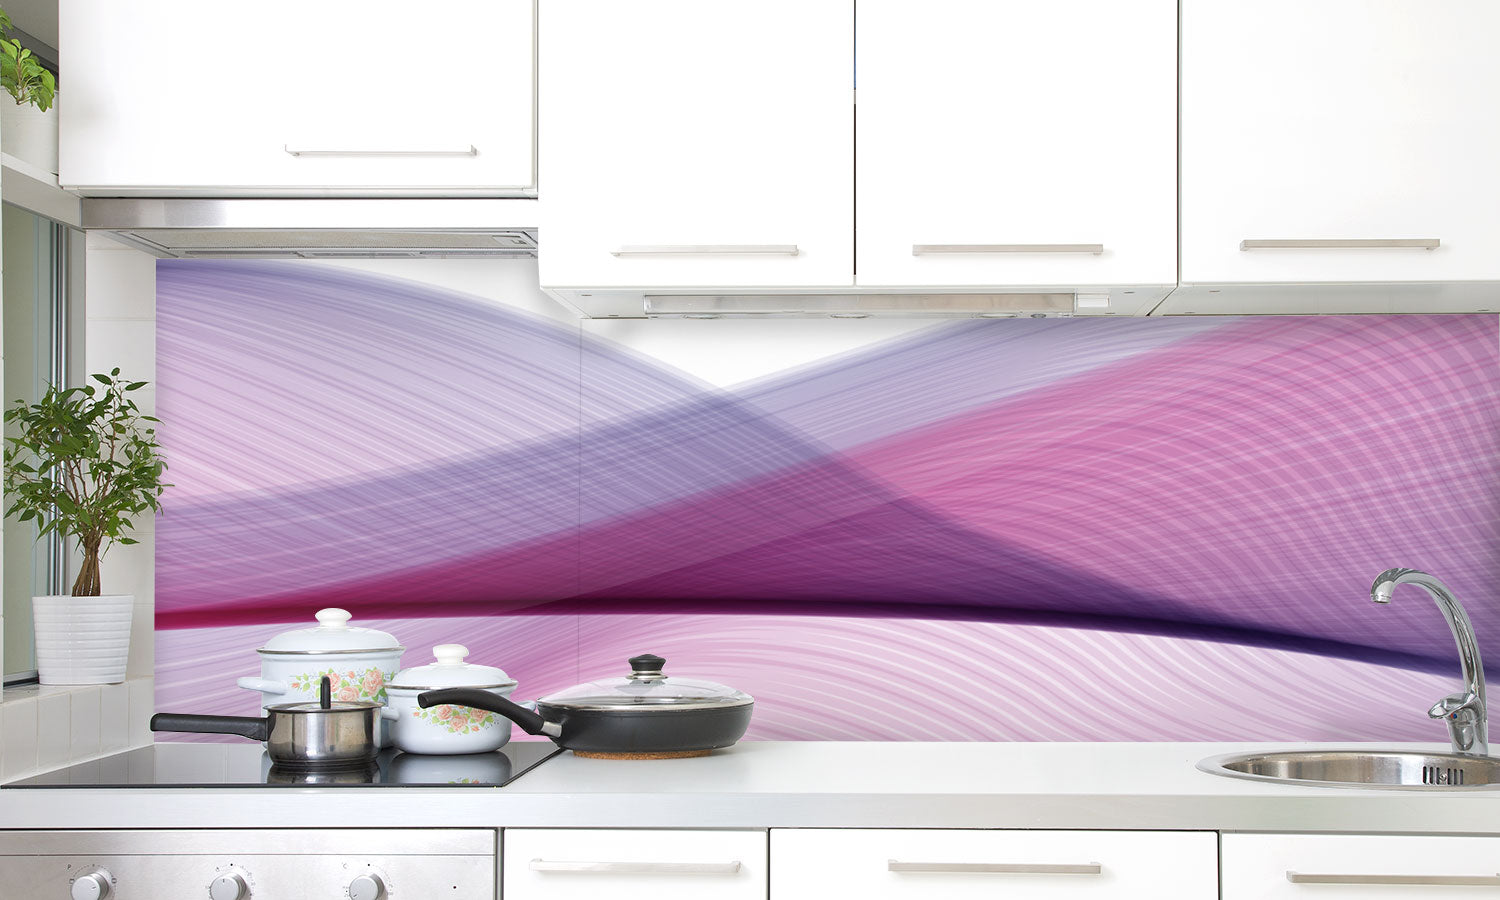 Kuhinjski paneli  Purple - Stekleni / PVC plošče / Pleksi steklo - s tiskom za kuhinjo, Stenske obloge PKU032 - Life-decor.si